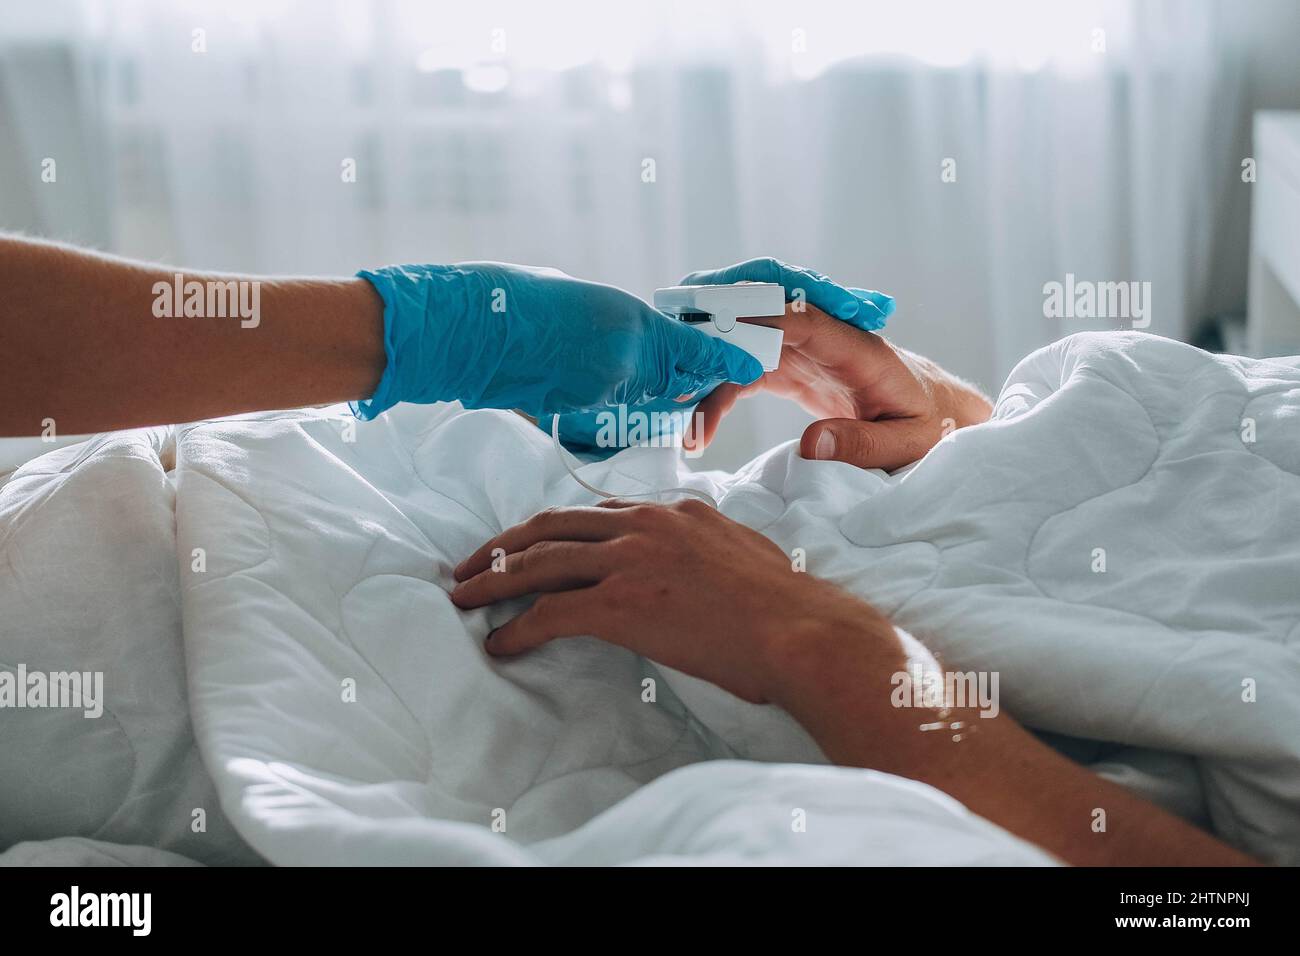 Der Mann liegt im Bett, ein Arzt mit medizinischen Handschuhen kommt auf ihn zu und legt ein Pulsoximeter auf seinen Finger, um die Sauerstoffsättigung zu messen. Asthmabehandlung Stockfoto